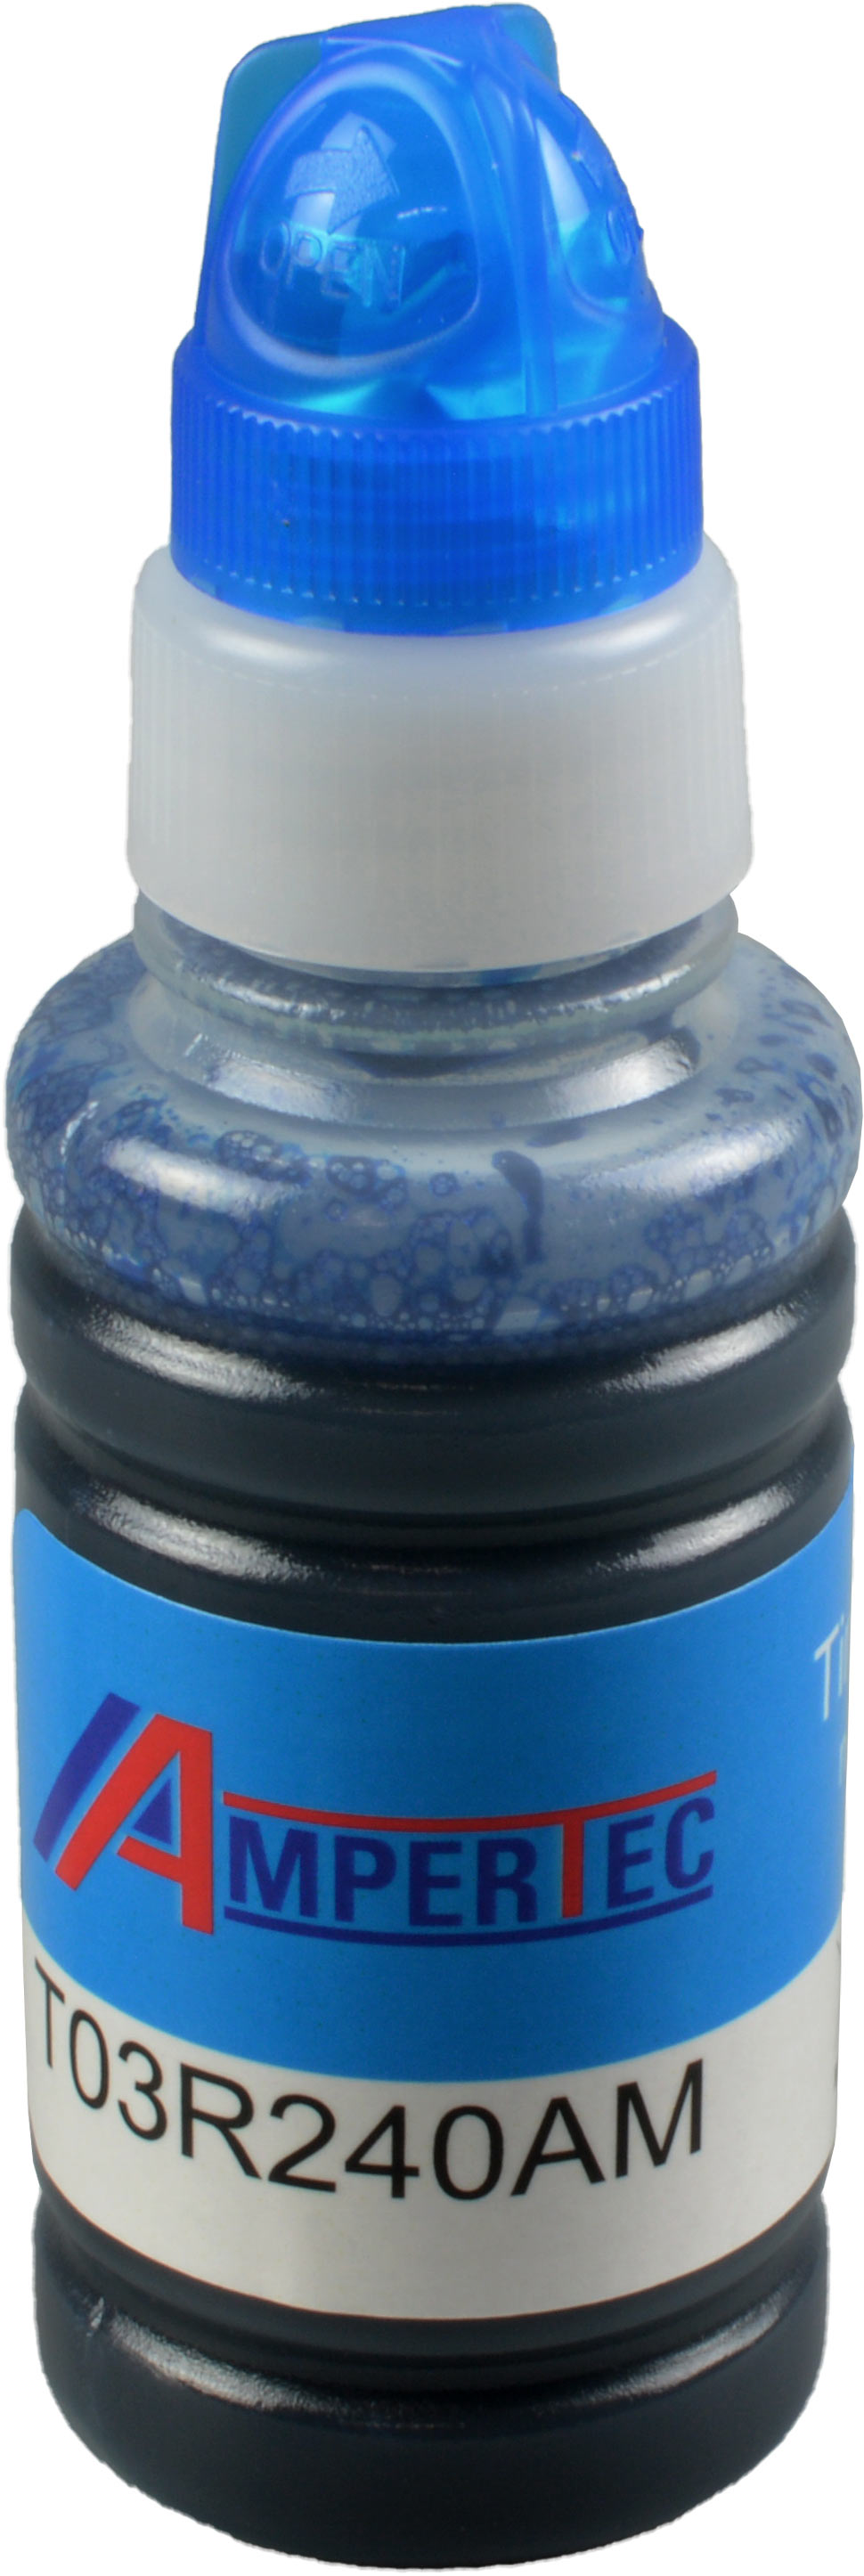 Ampertec Tinte für Epson C13T03R240  102  cyan